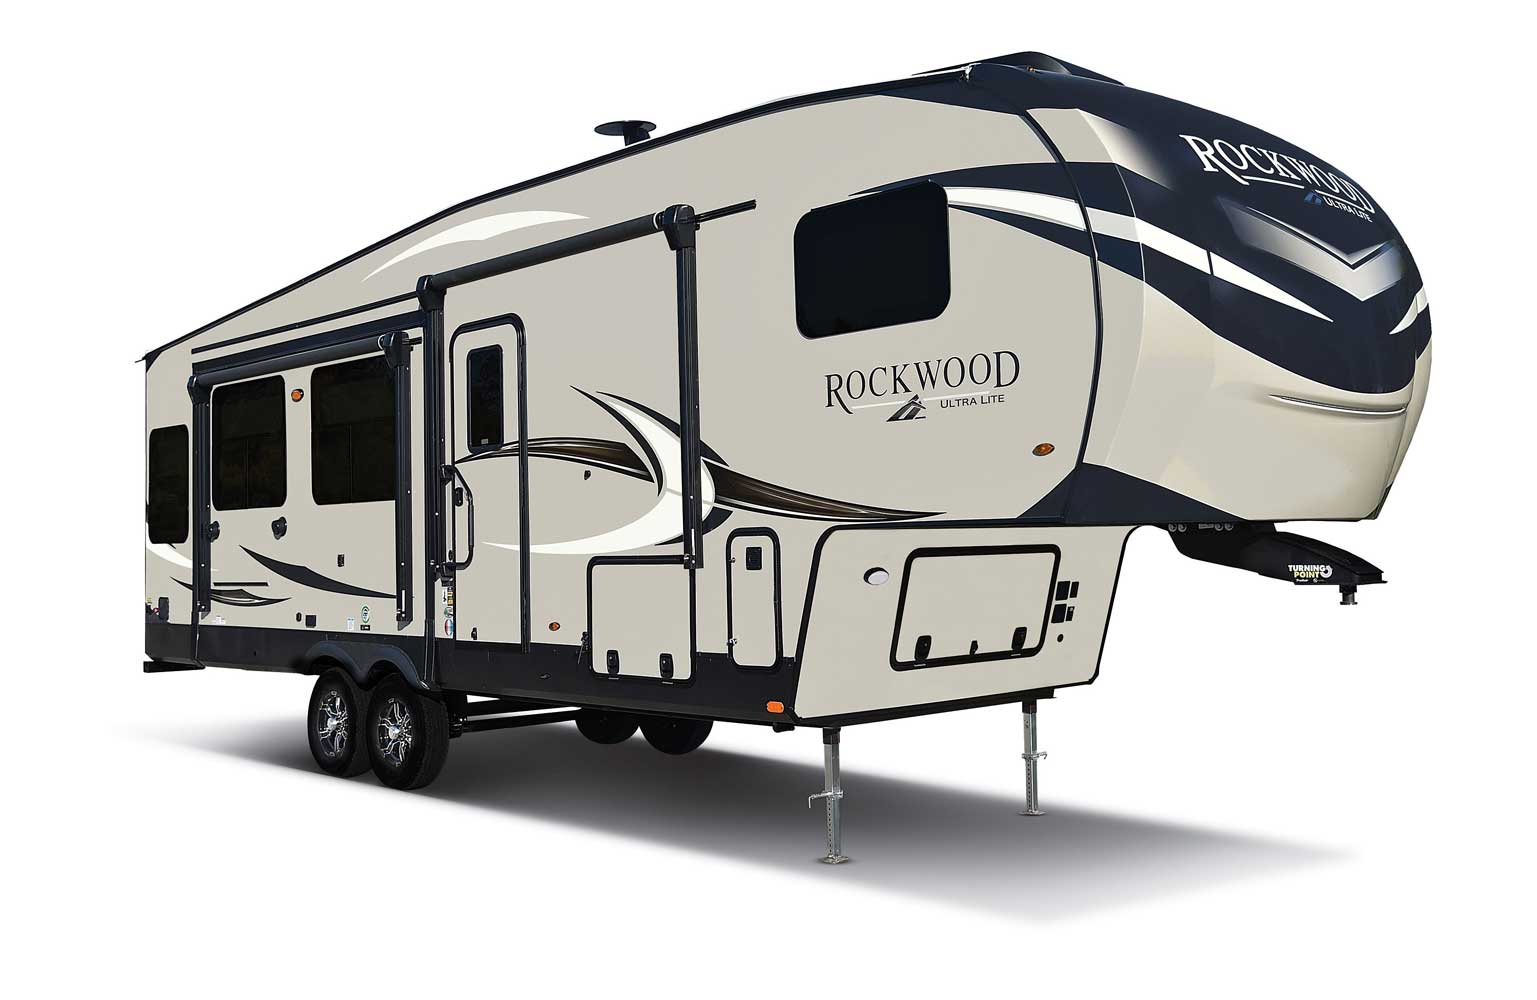 Rockwood Ultra Lite Travel Trailer models for sale at J&M Camper & Marine.